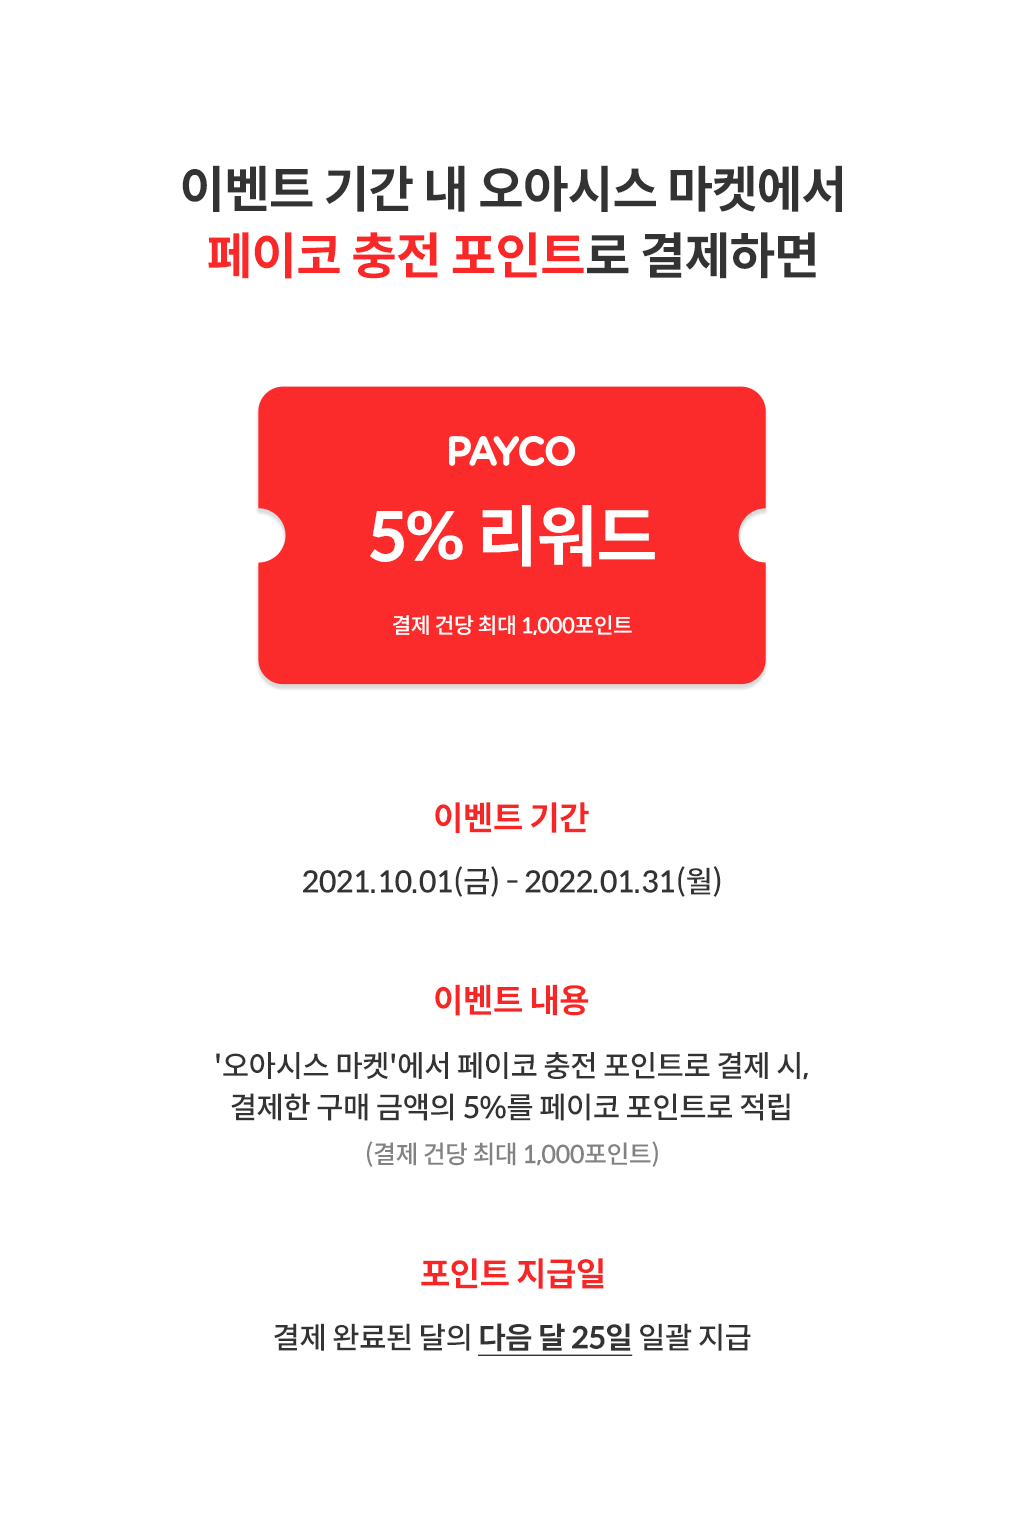 이벤트 기간 내 오아시스 마켓에서 페이코 충전 포인트로 결제하면 PAYCO 5% 리워드 (결제 건당 최대 1,000포인트) / 이벤트기간: 2021.10.01.(금)-2021.12.31.(금) / 이벤트내용: '오아시스 마켓'에서 페이코 충전 포인트로 결제 시, 결제한 구매 금액의 5%를 페이코 포인트로 적립 (결제 건당 최대 1,000포인트) / 포인트지급일: 결제 완료된 달의 다음 달 25일 일괄 지급